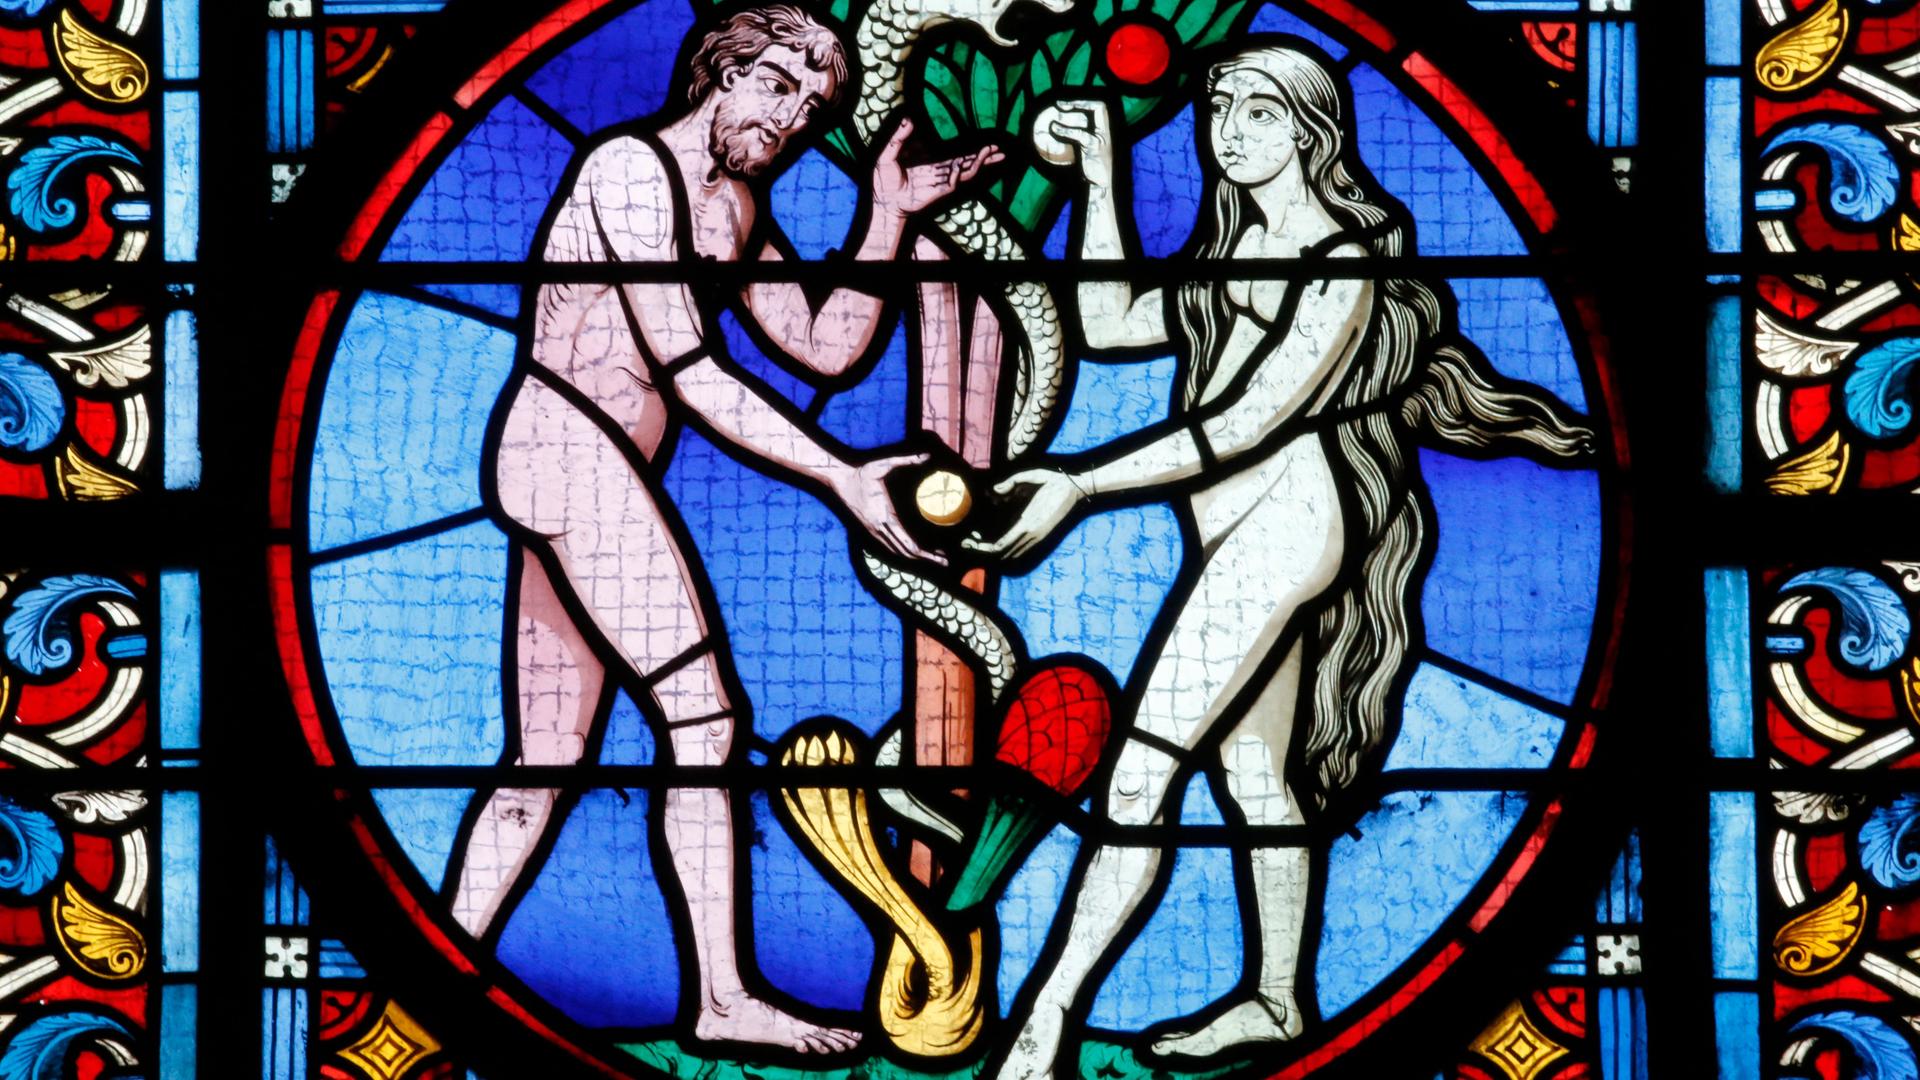 Farbiges Glasfenster einer Kirche mit Adam und Eva im Paradies